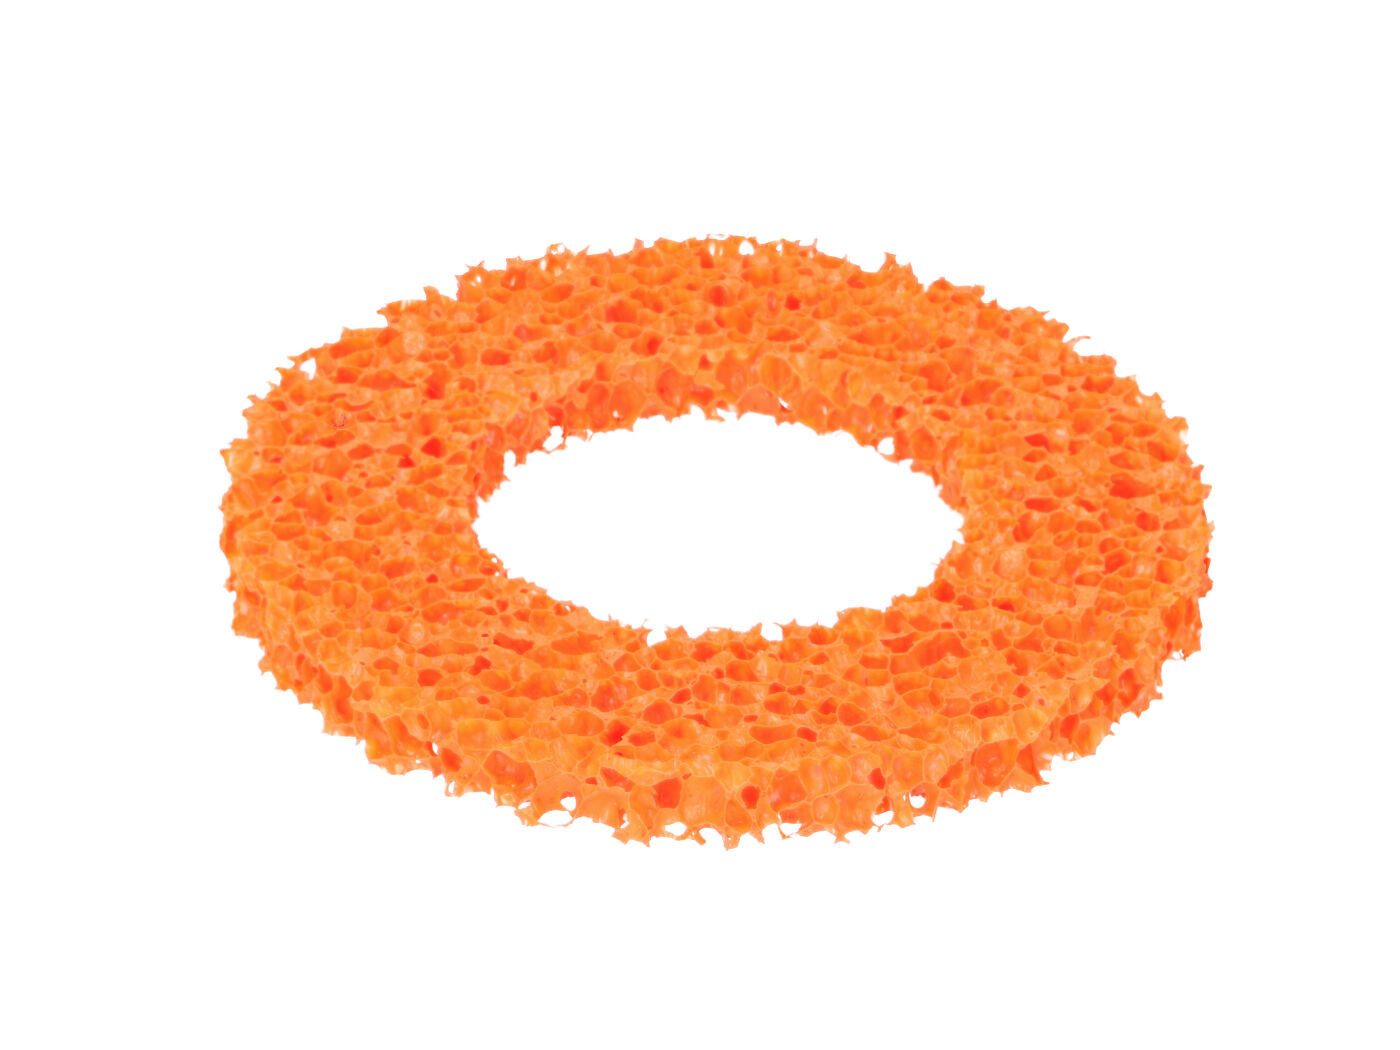 Narancssárga üzemanyag betöltőnyak gumiszivacs gyűrű 120x60x10mm - Simson S50, S51, S70, S53, SR50